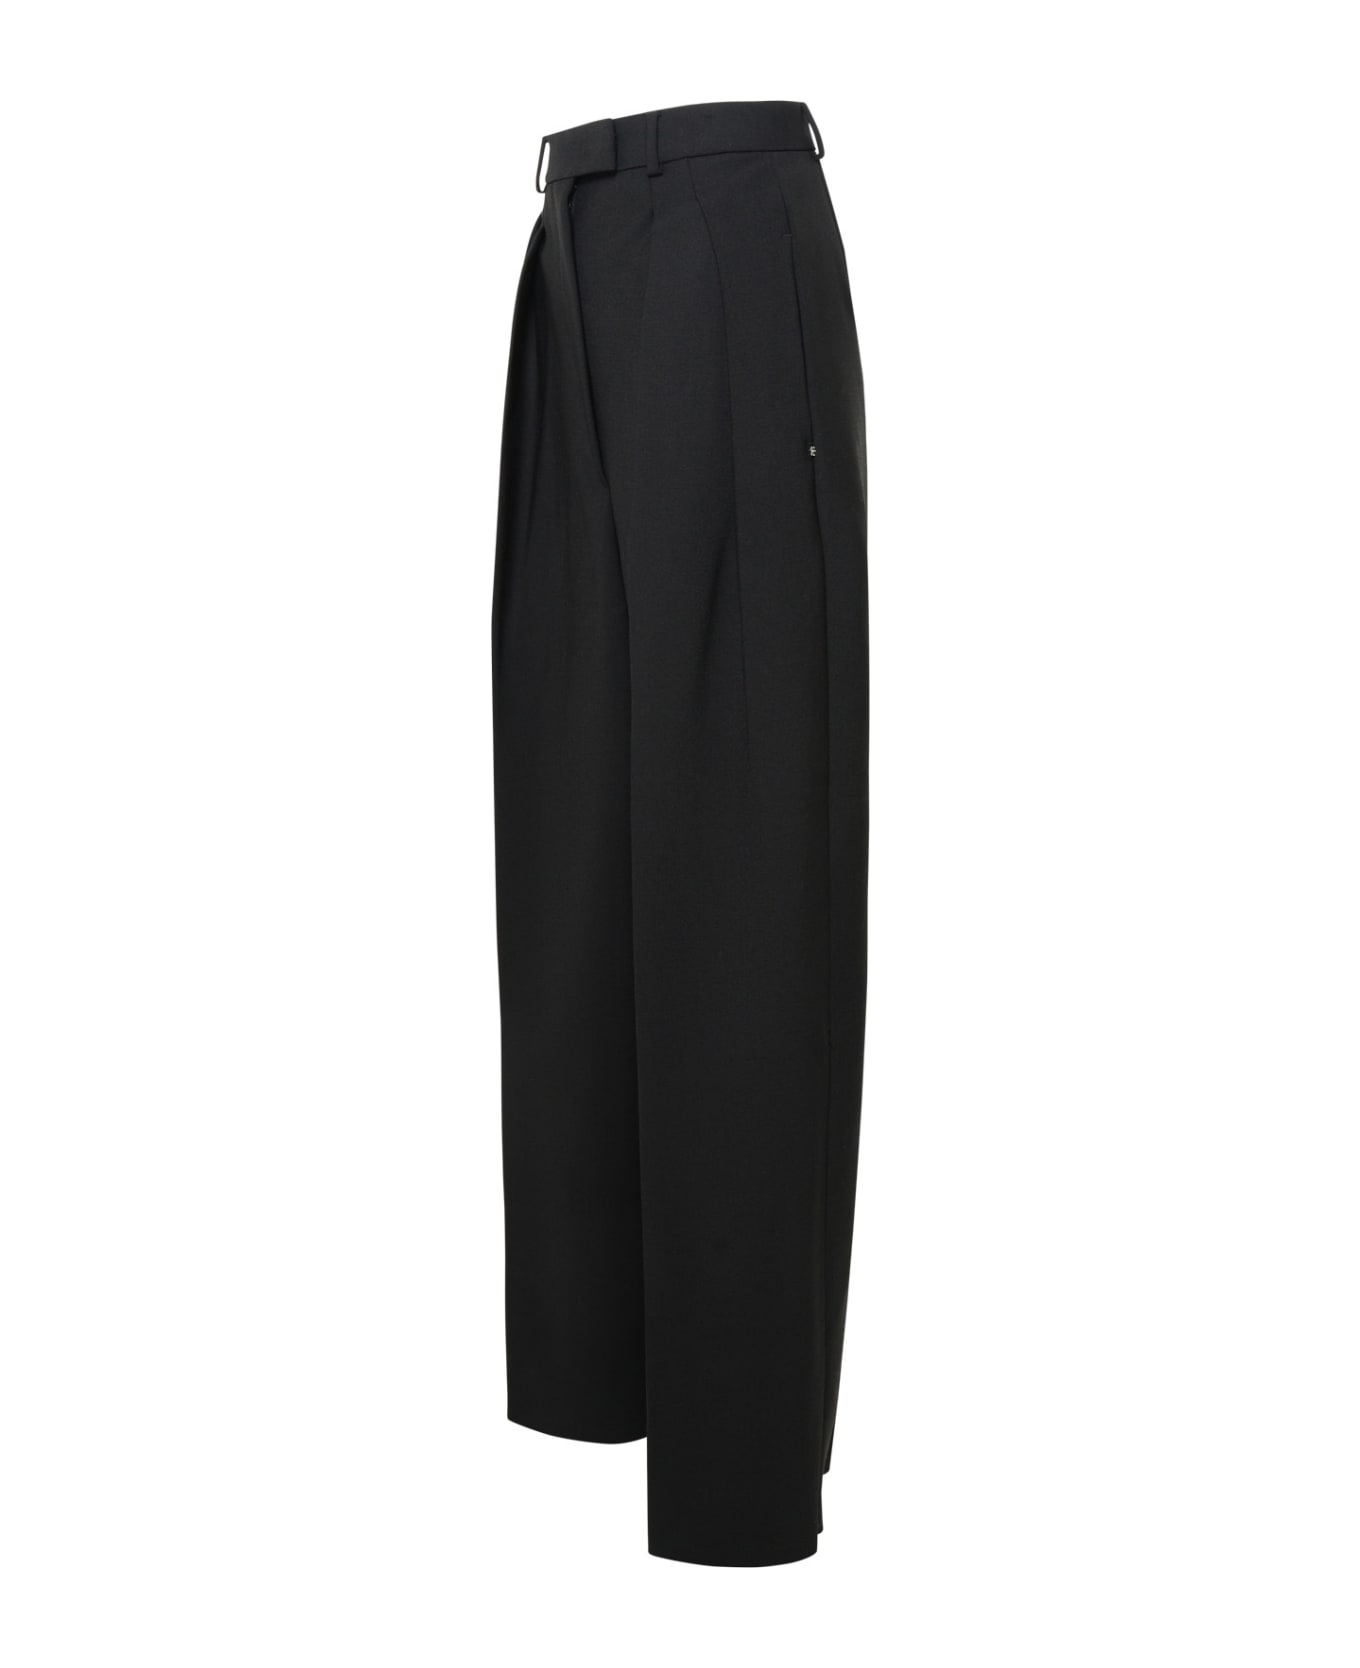 SportMax Enro 'gessati' Virgin Wool Blend Pants - Black